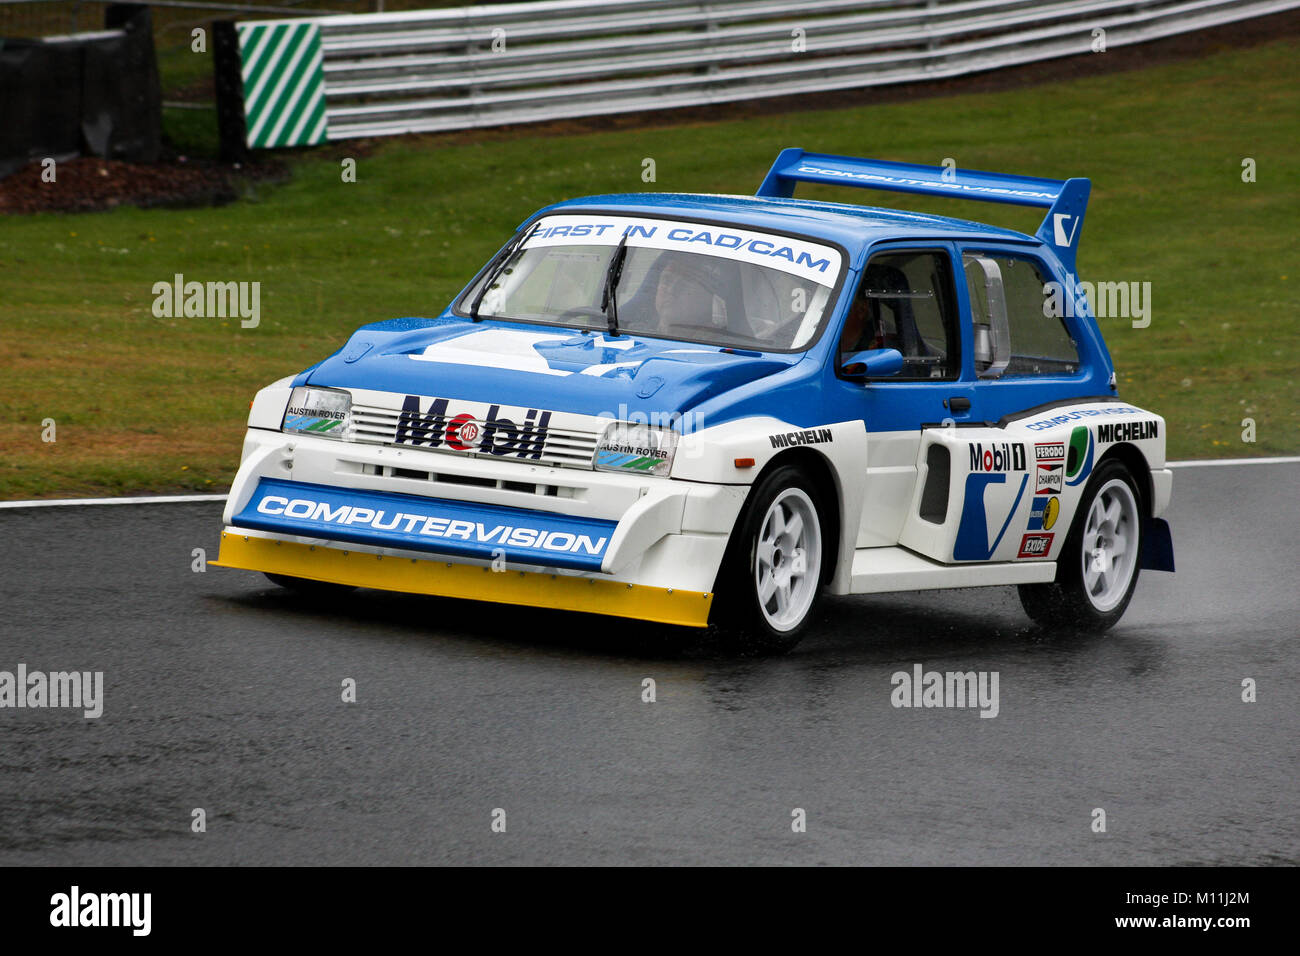 MG Metro 6R4 Group B Rally Car Stockfotografie - Alamy